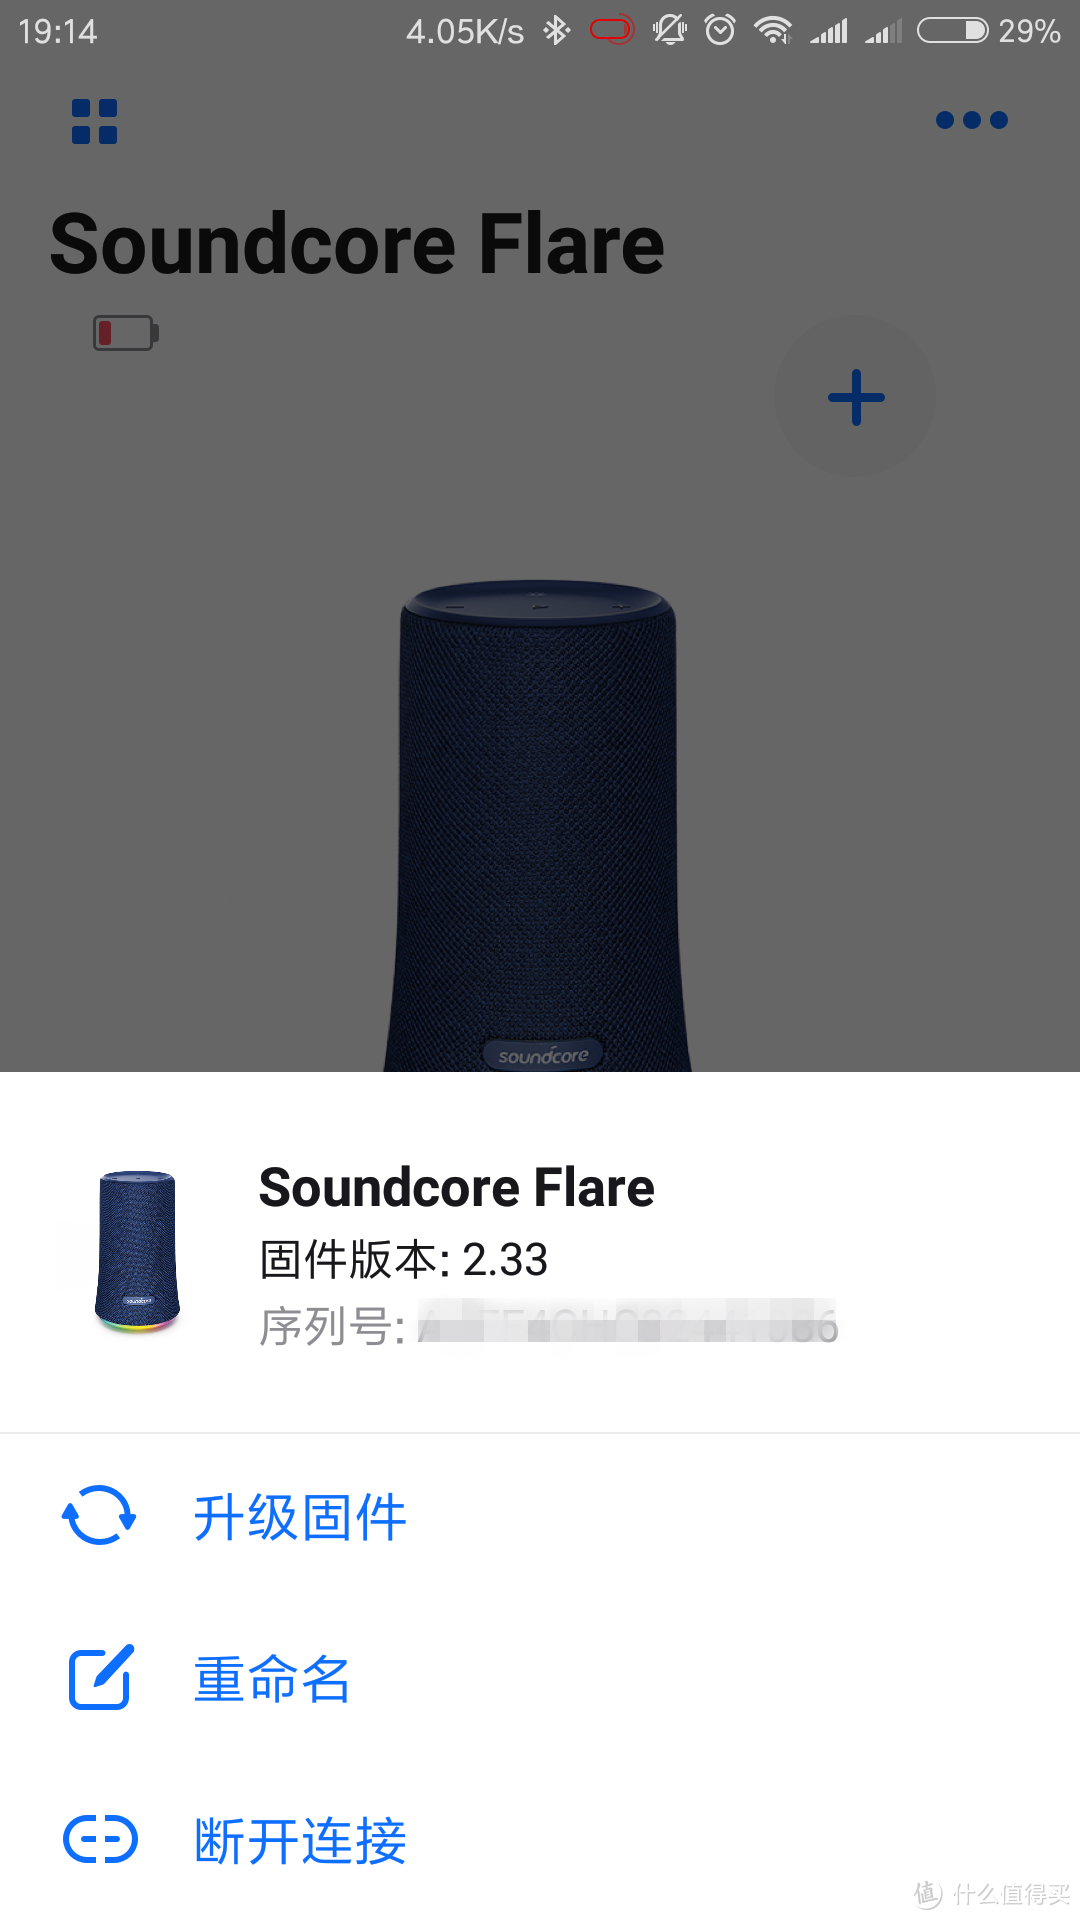 有声有色，纵享声色——Soundcore Flare 燃！无线蓝牙音箱使用评测